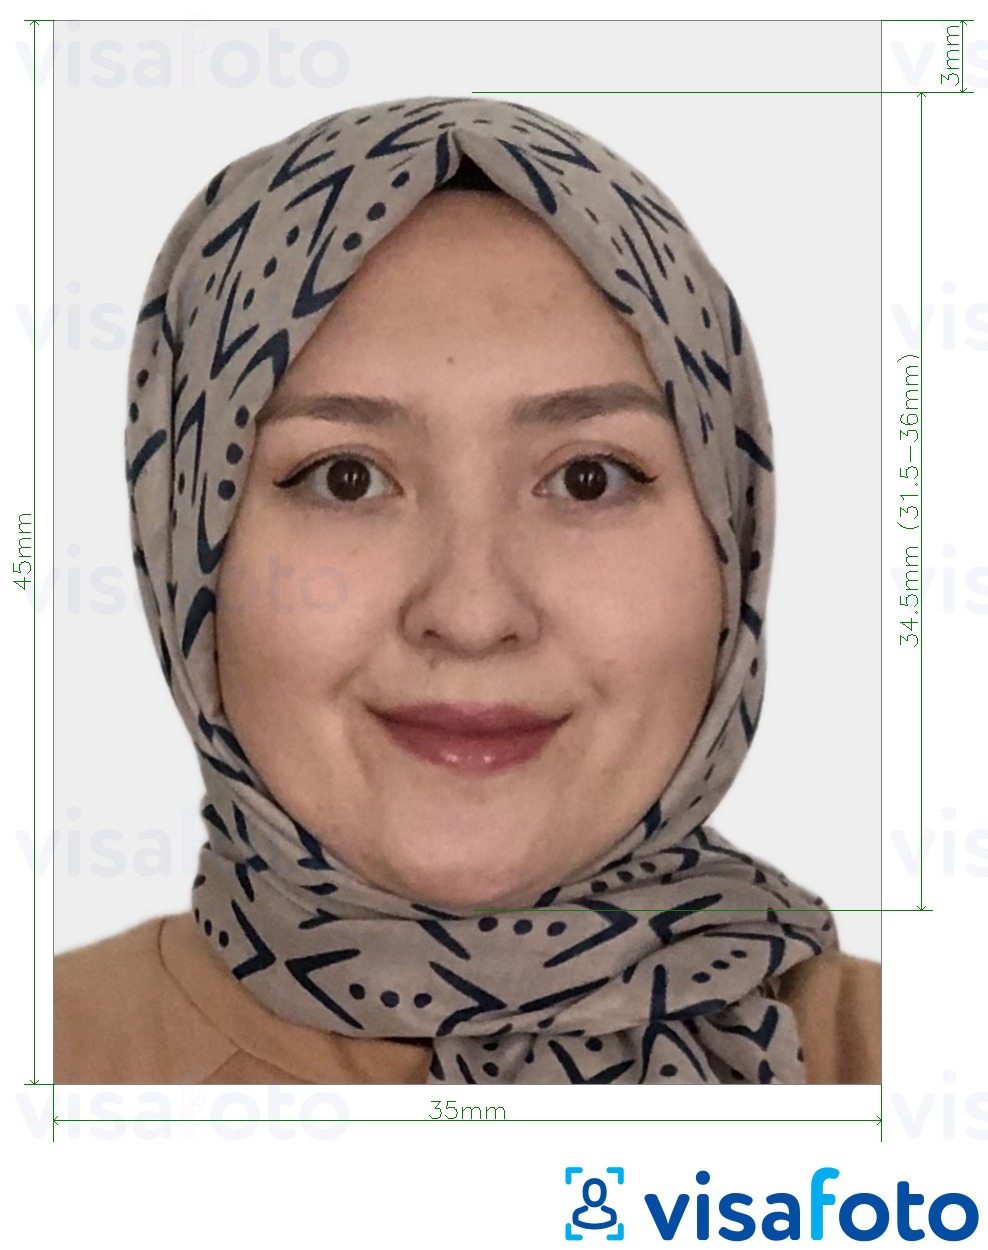 Contoh dari foto untuk Visa Kyrgyzstan 35x45 mm (3,5x4,5 cm) dengan ukuran spesifikasi yang tepat